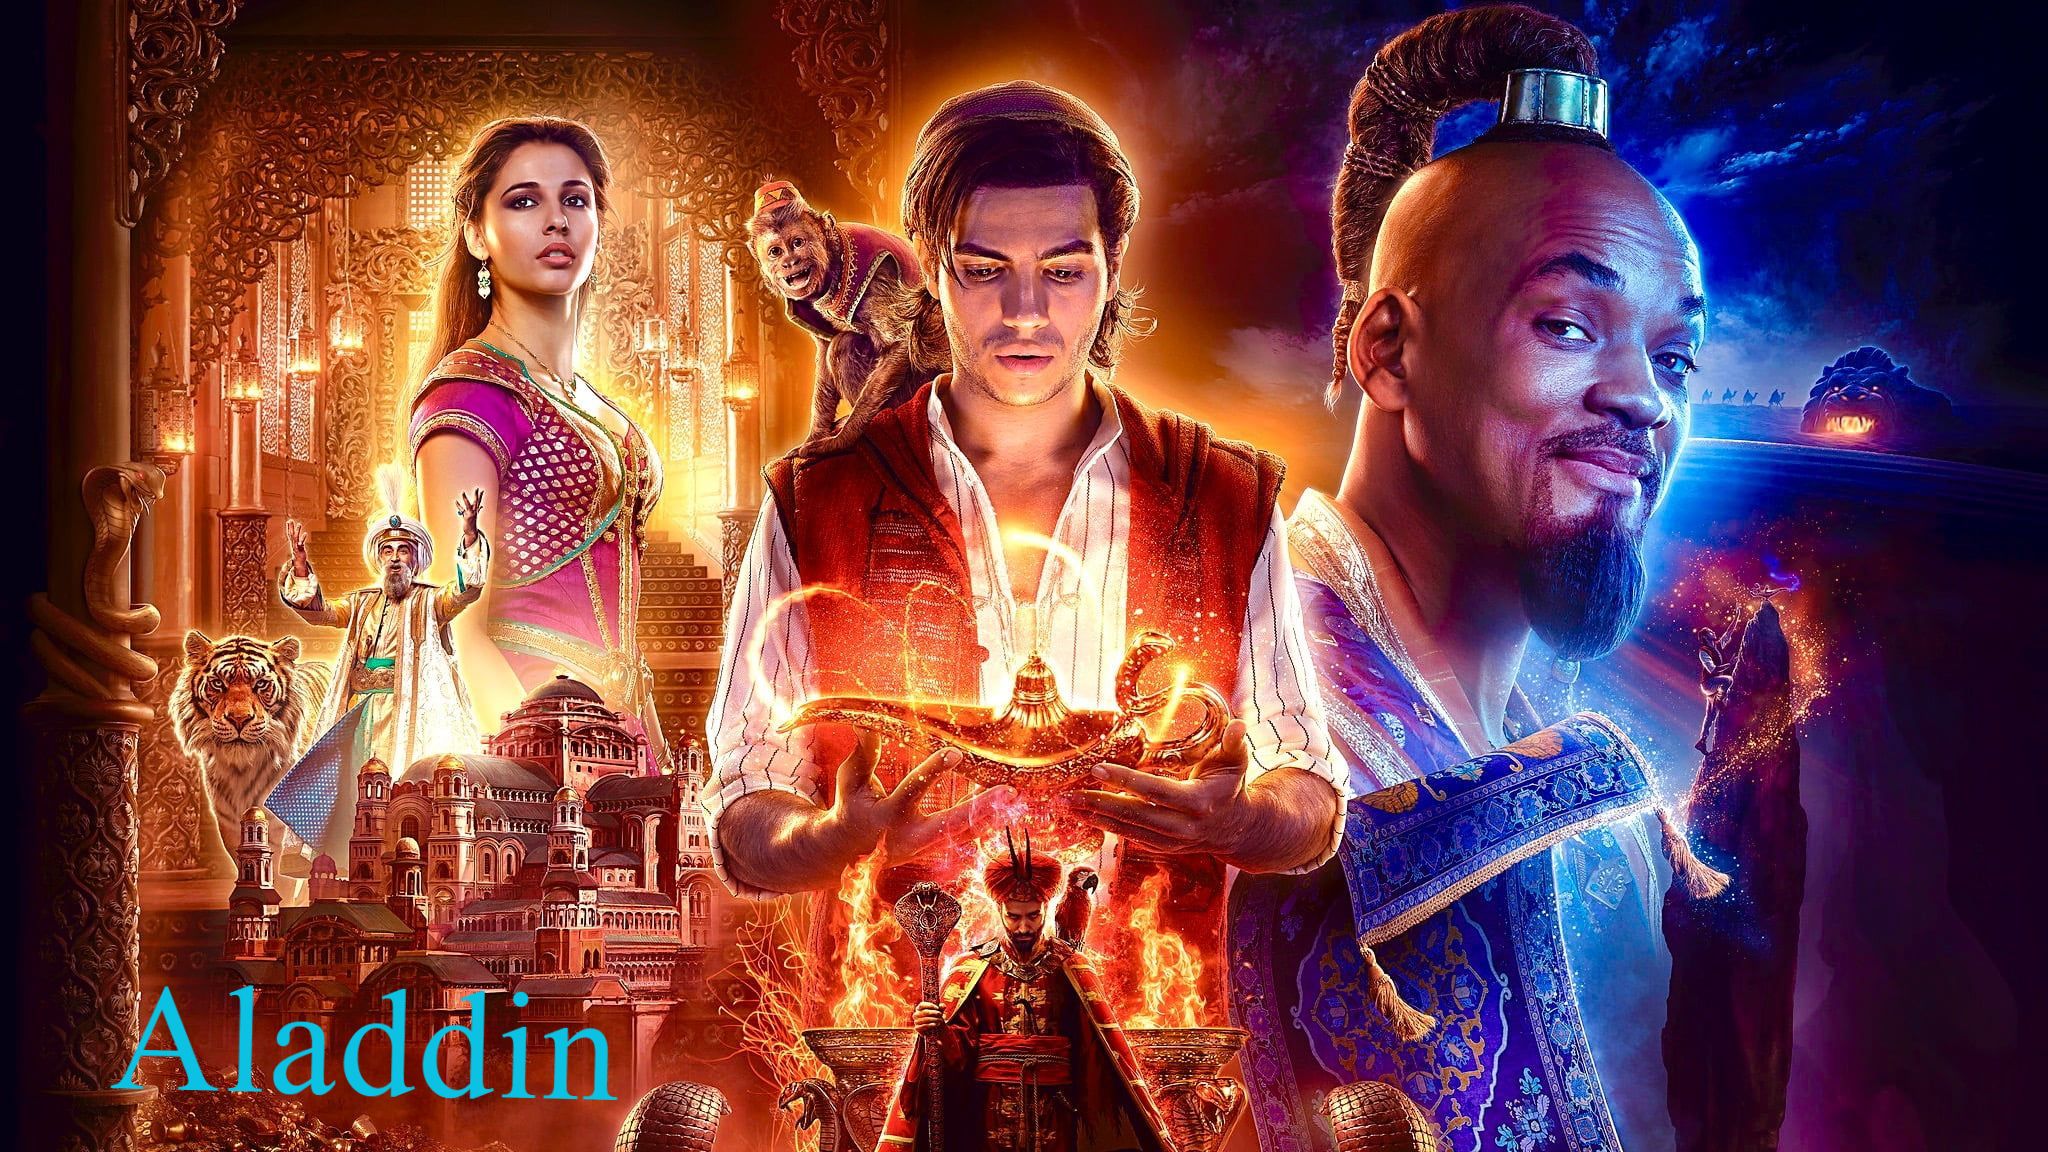 Aladdin (2019) Hindi Dubbed - Bilibili